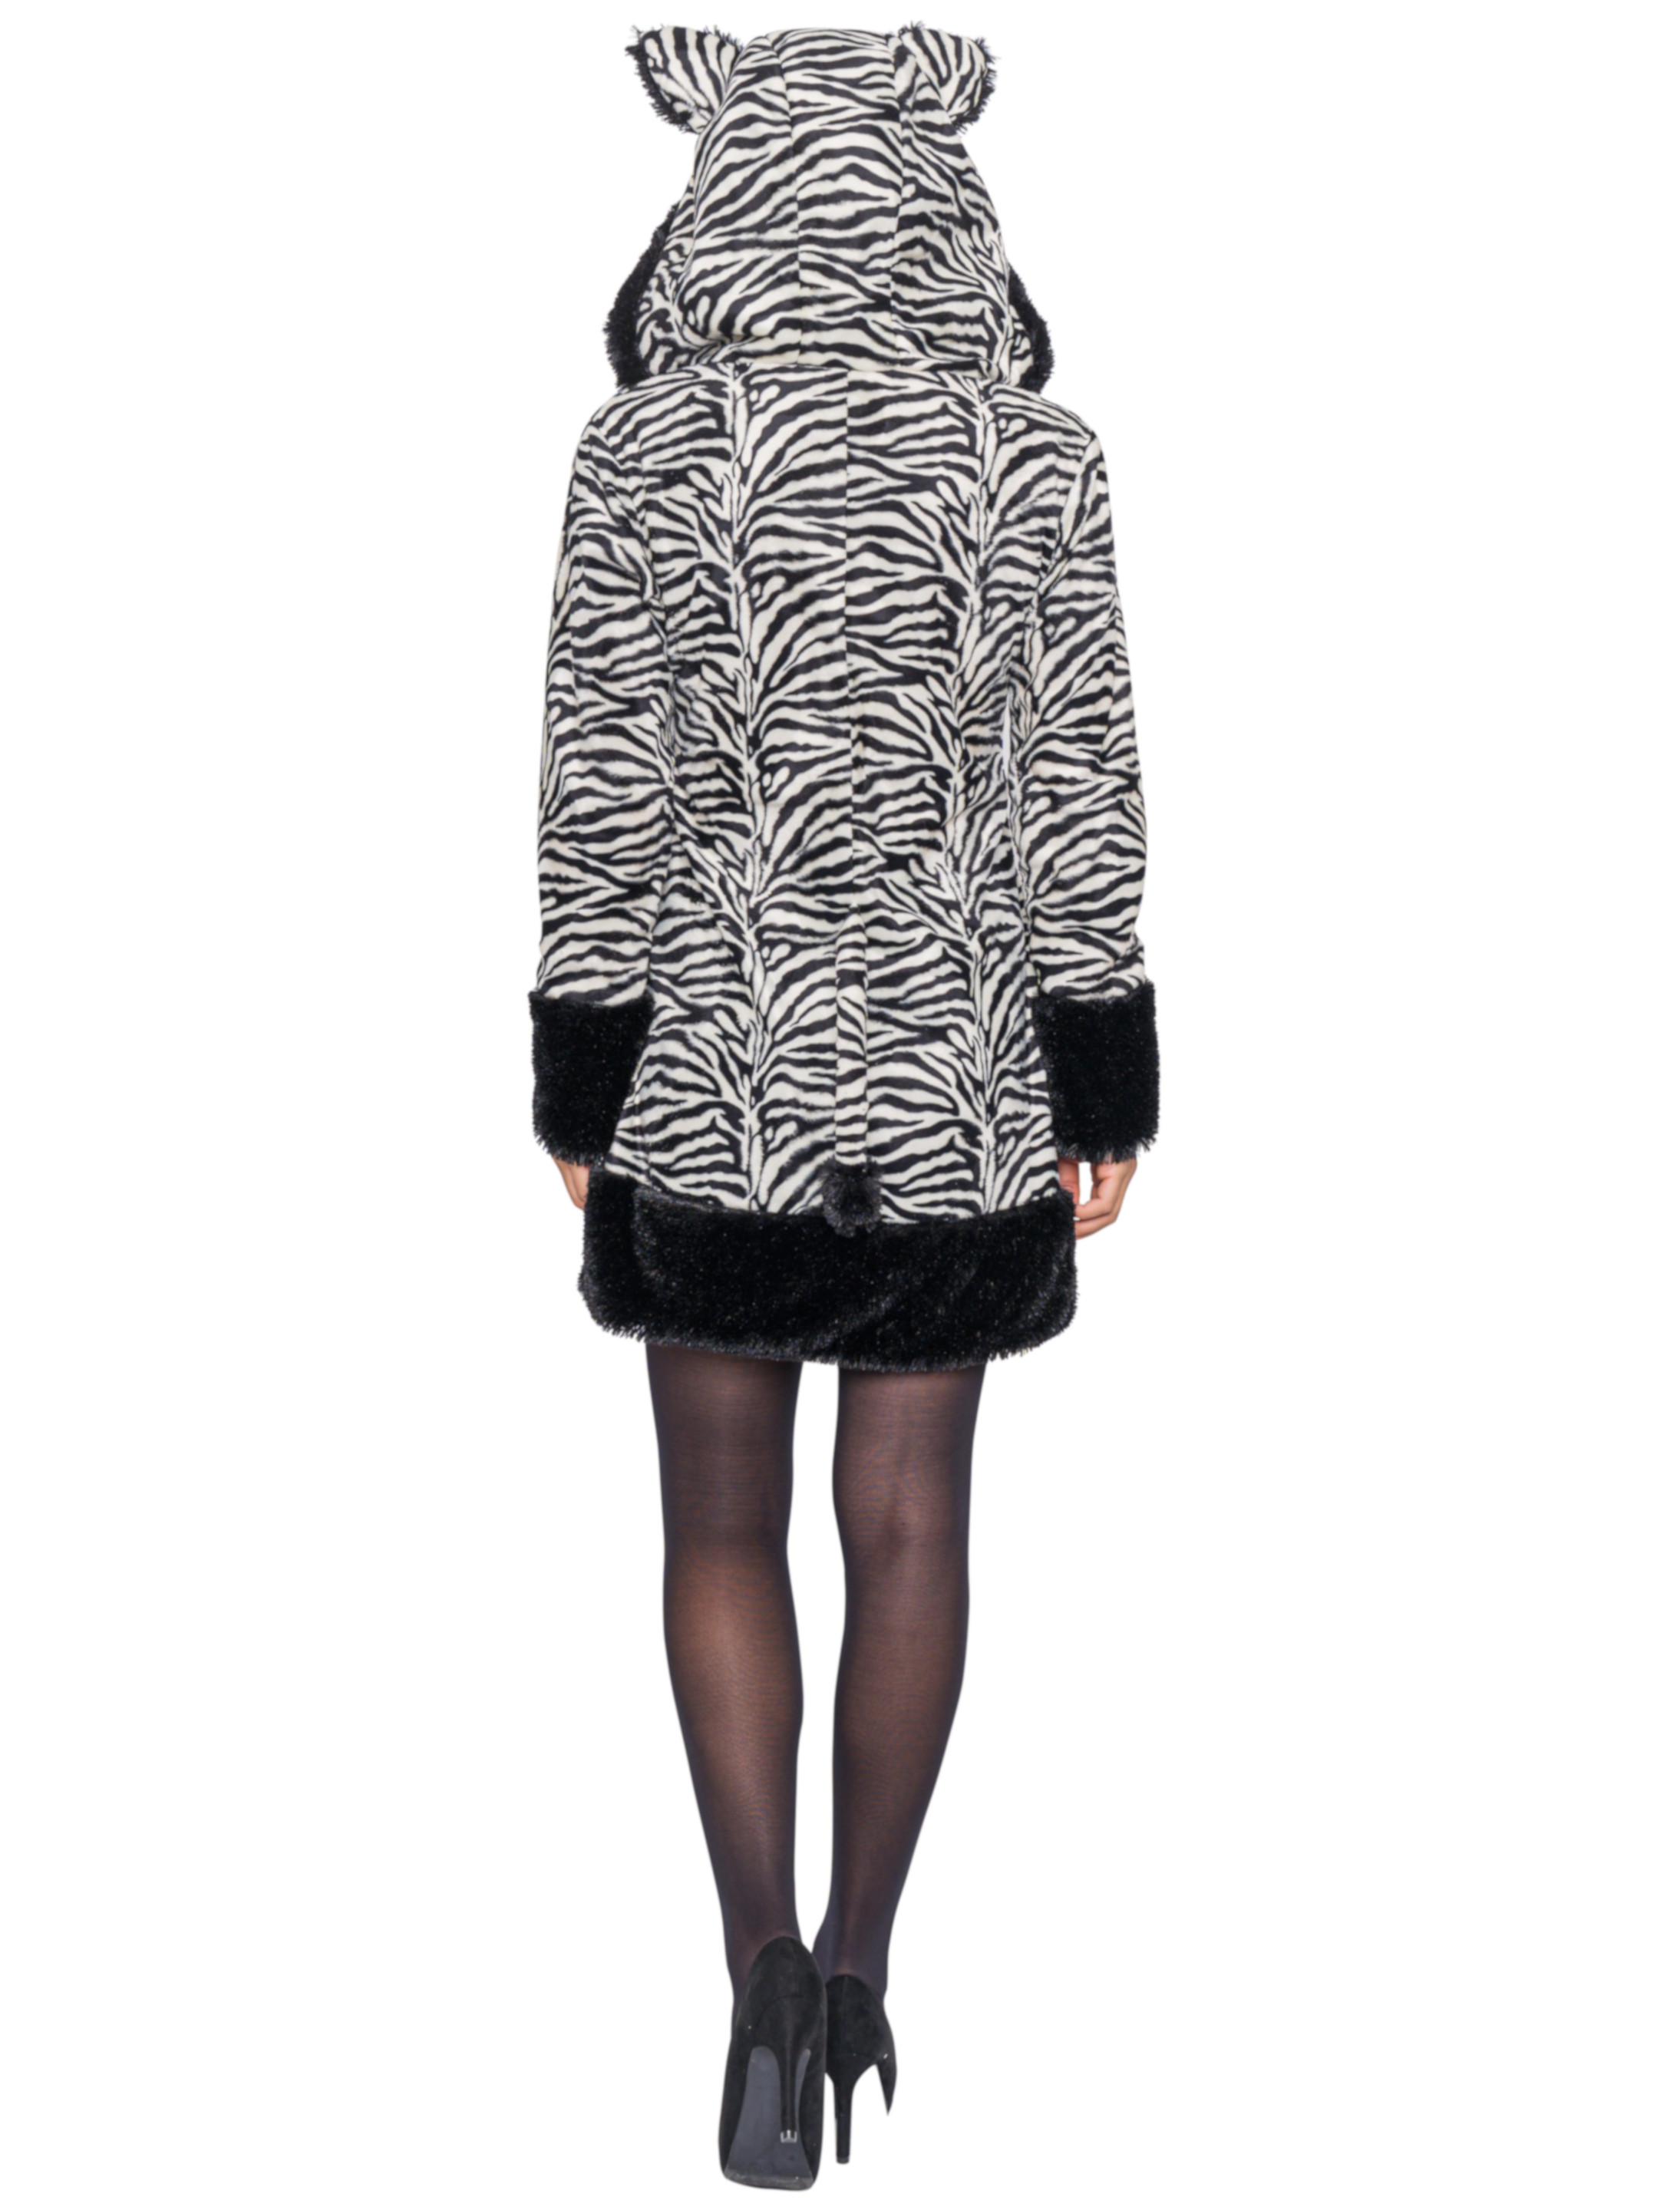 Kleid Plüsch Zebra Damen schwarz/weiß 46